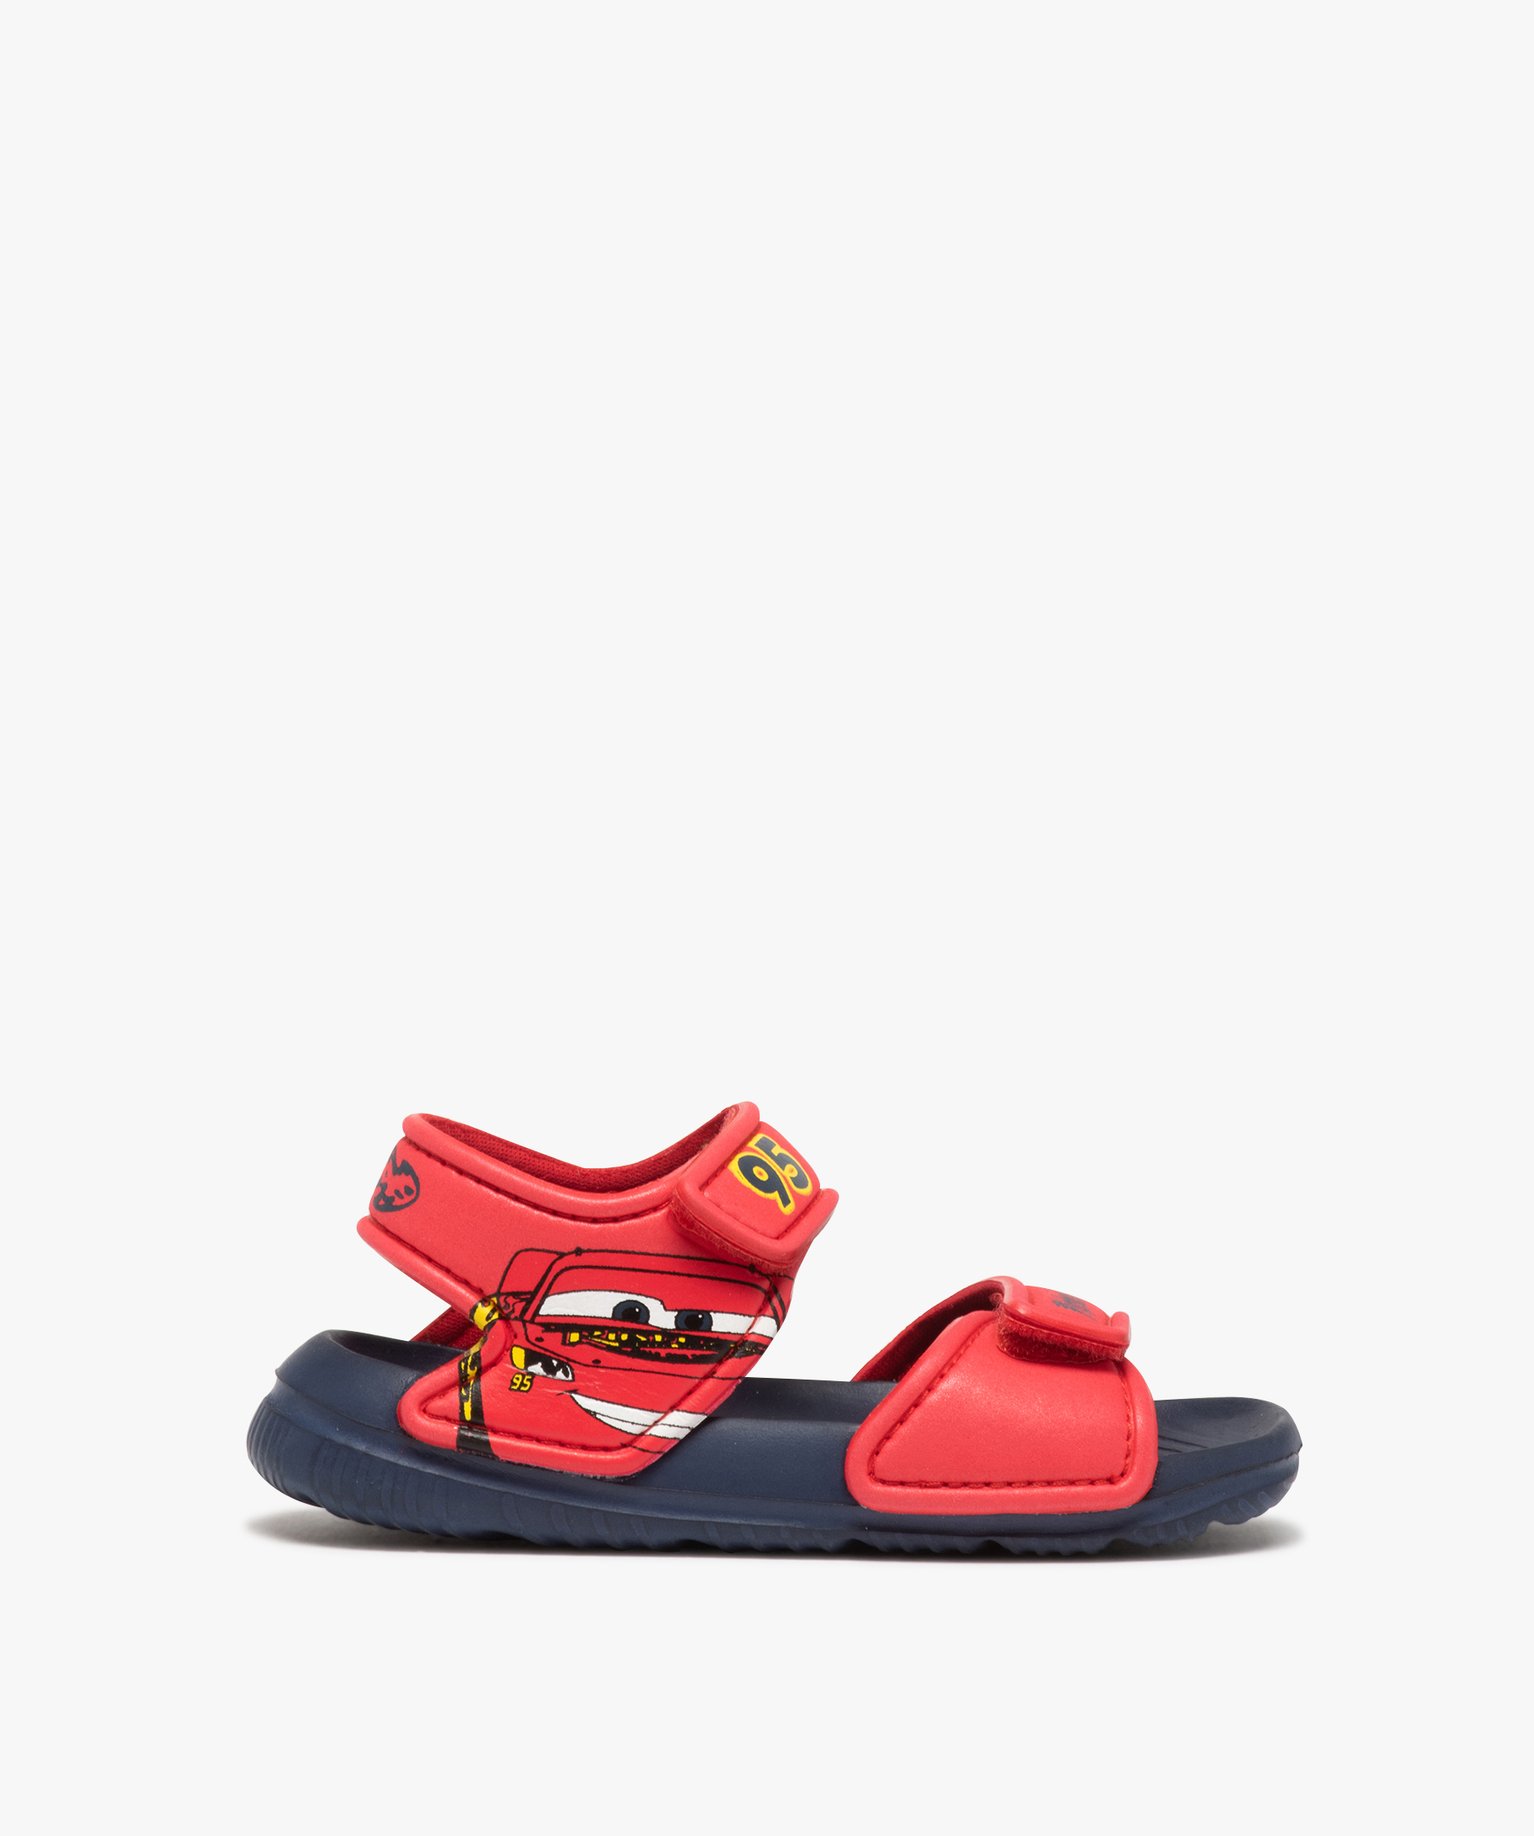 Sandales de plage garçon - Cars - 28 - rouge - CARS